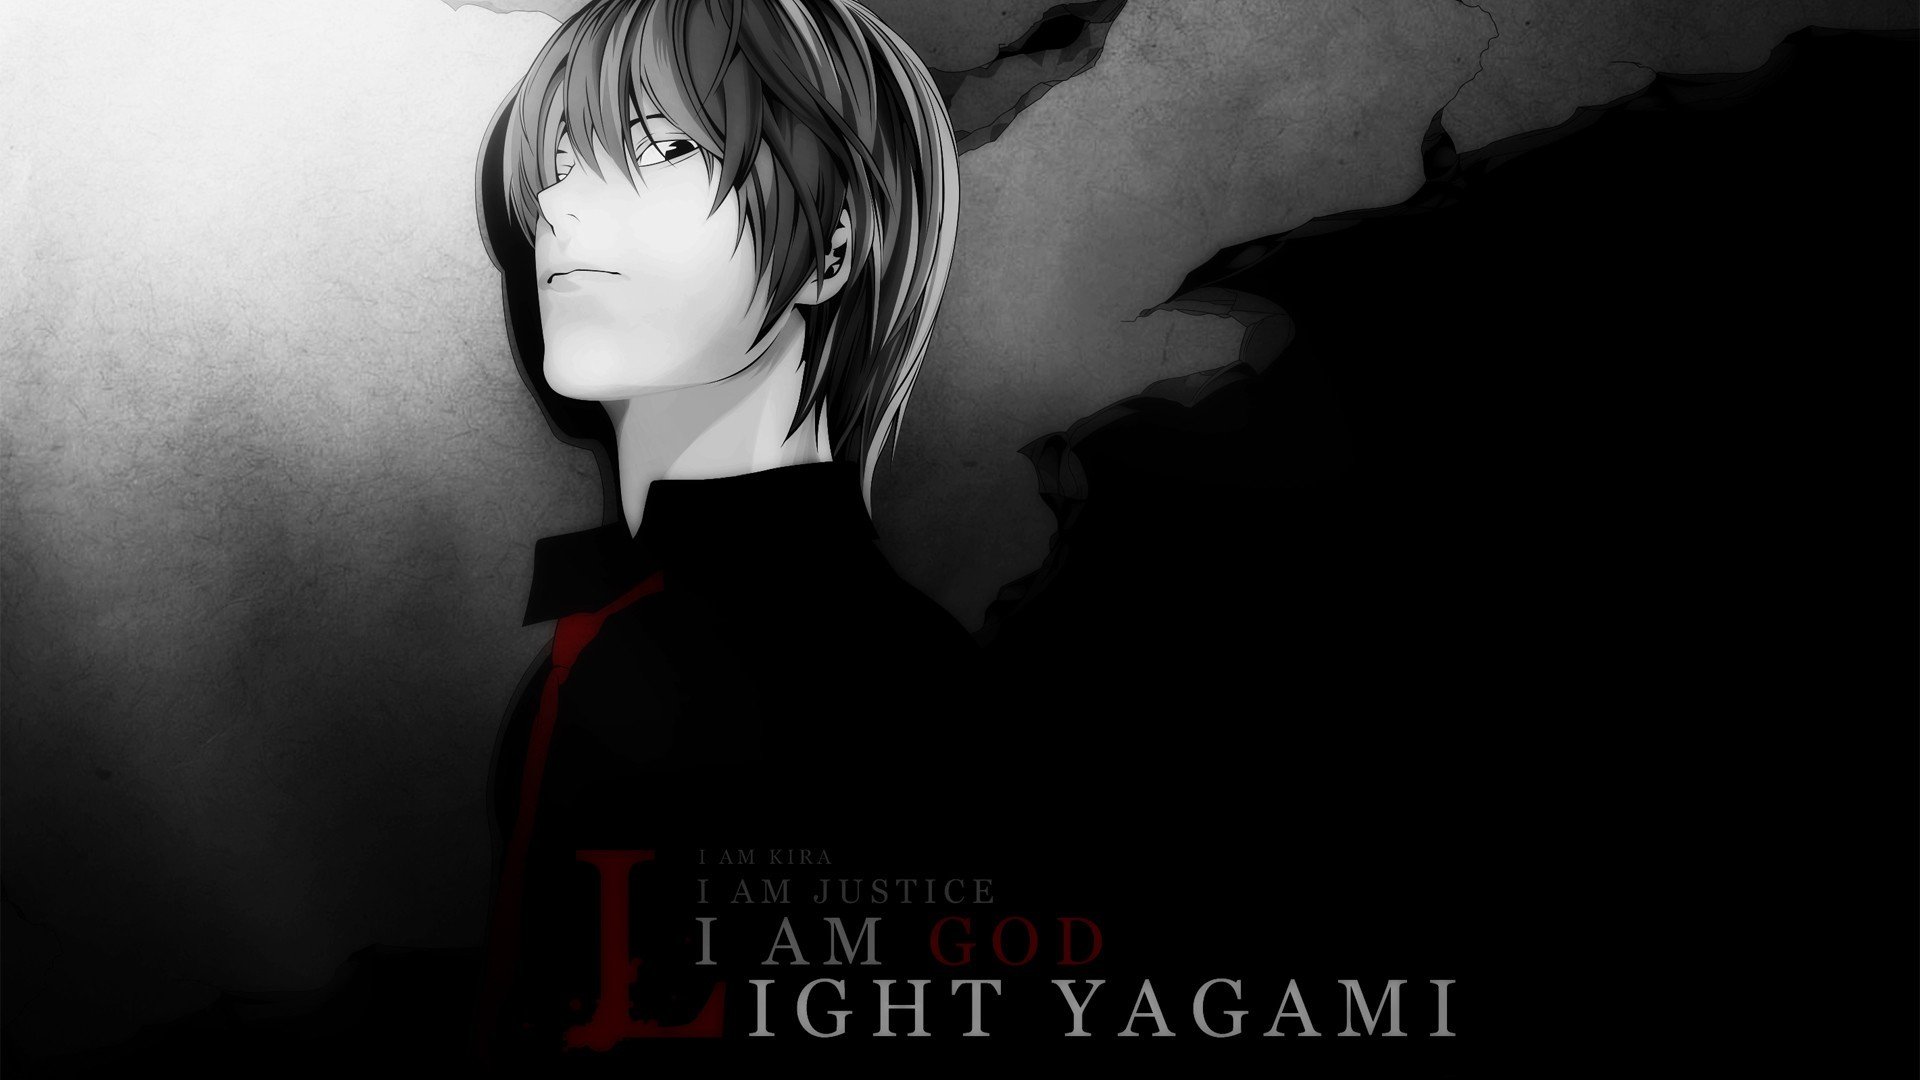 Light Yagami De Death Note Wallpaper 1920x1080 Id9